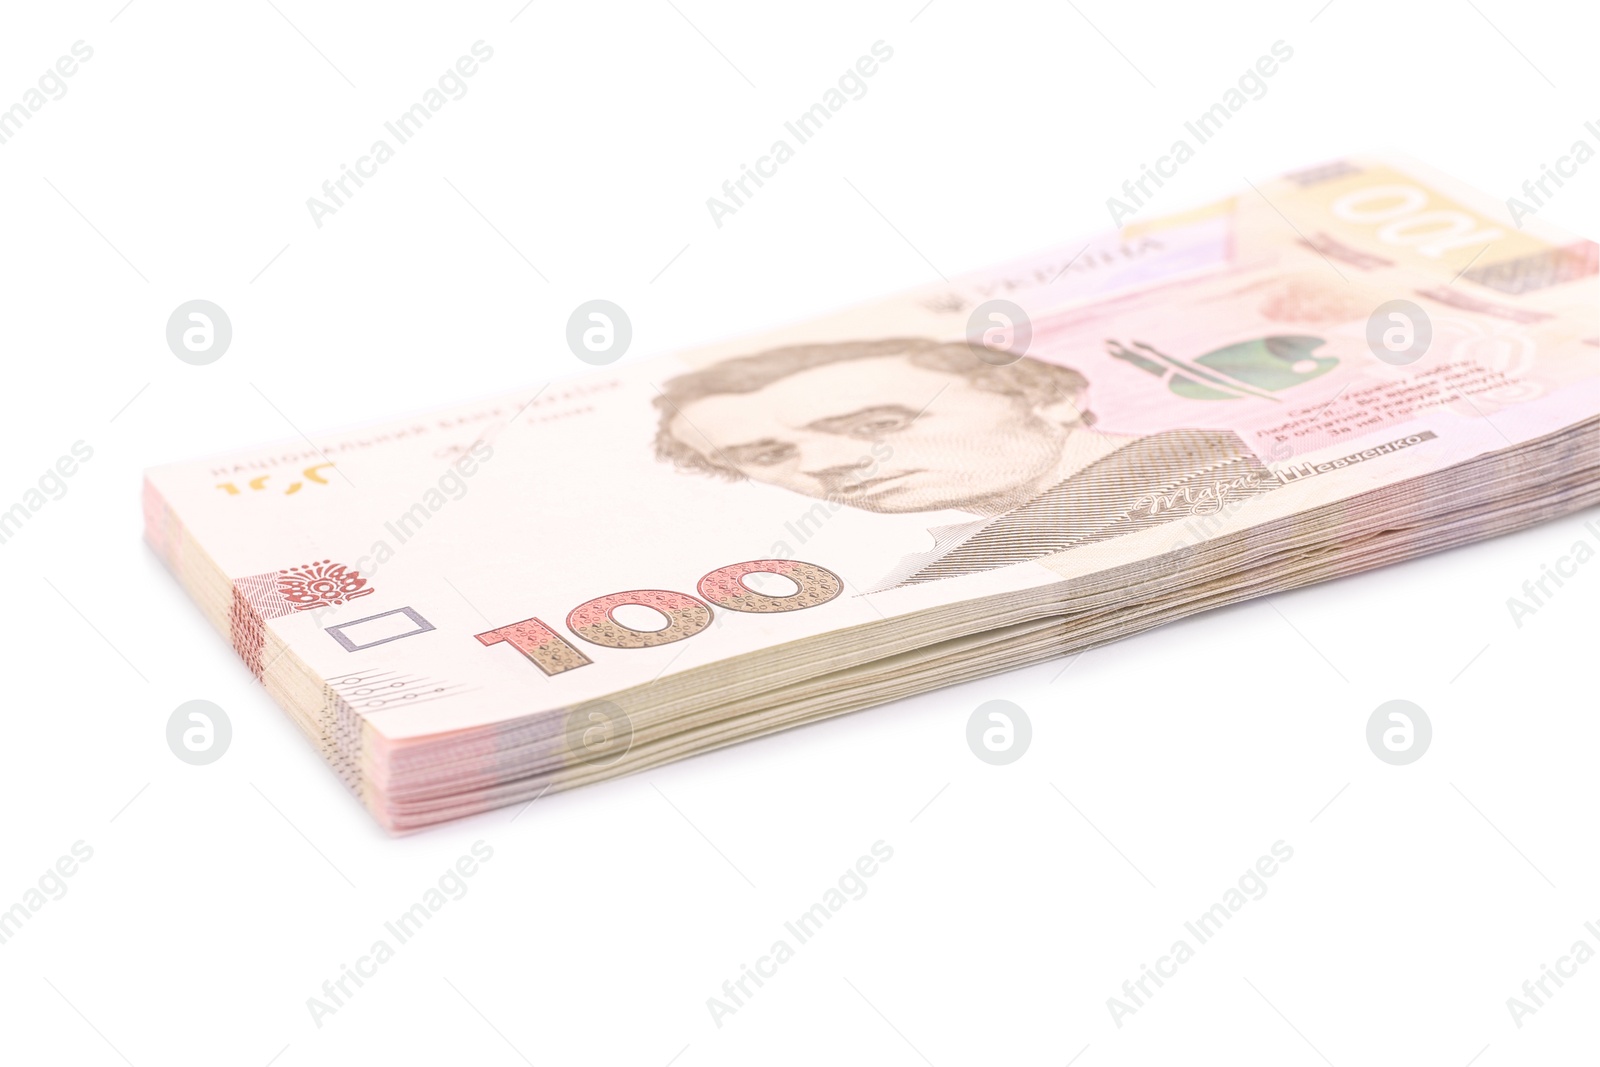 Photo of 100 Ukrainian Hryvnia banknotes on white background